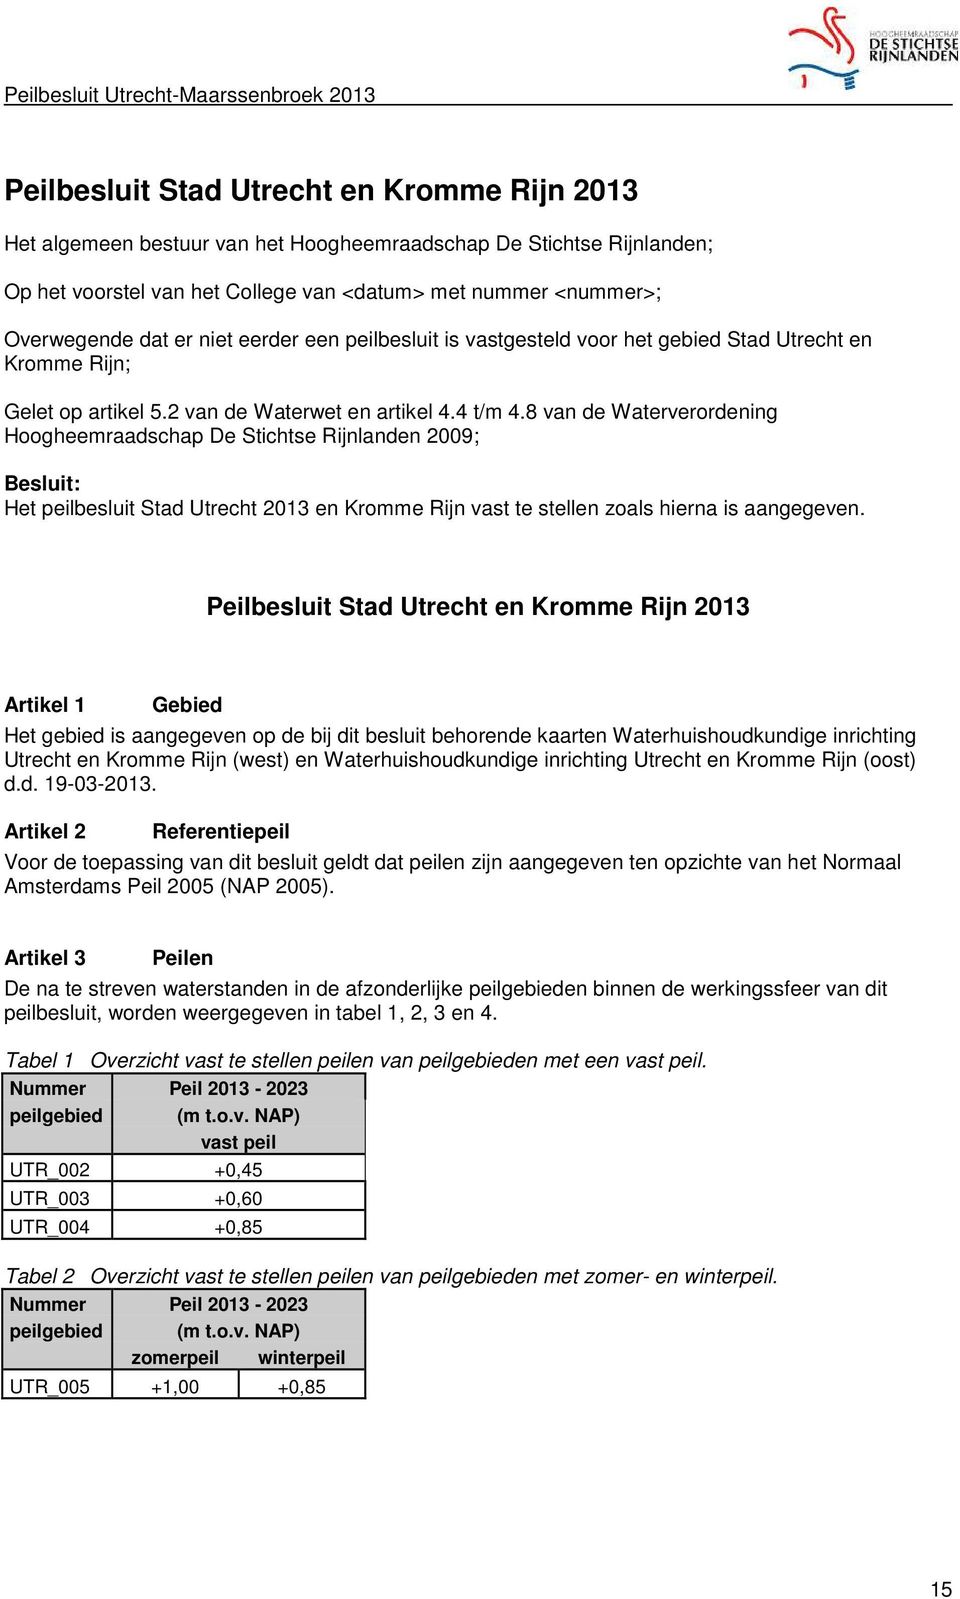 8 van de Waterverordening Hoogheemraadschap De Stichtse Rijnlanden 2009; Besluit: Het peilbesluit Stad Utrecht 2013 en Kromme Rijn vast te stellen zoals hierna is aangegeven.